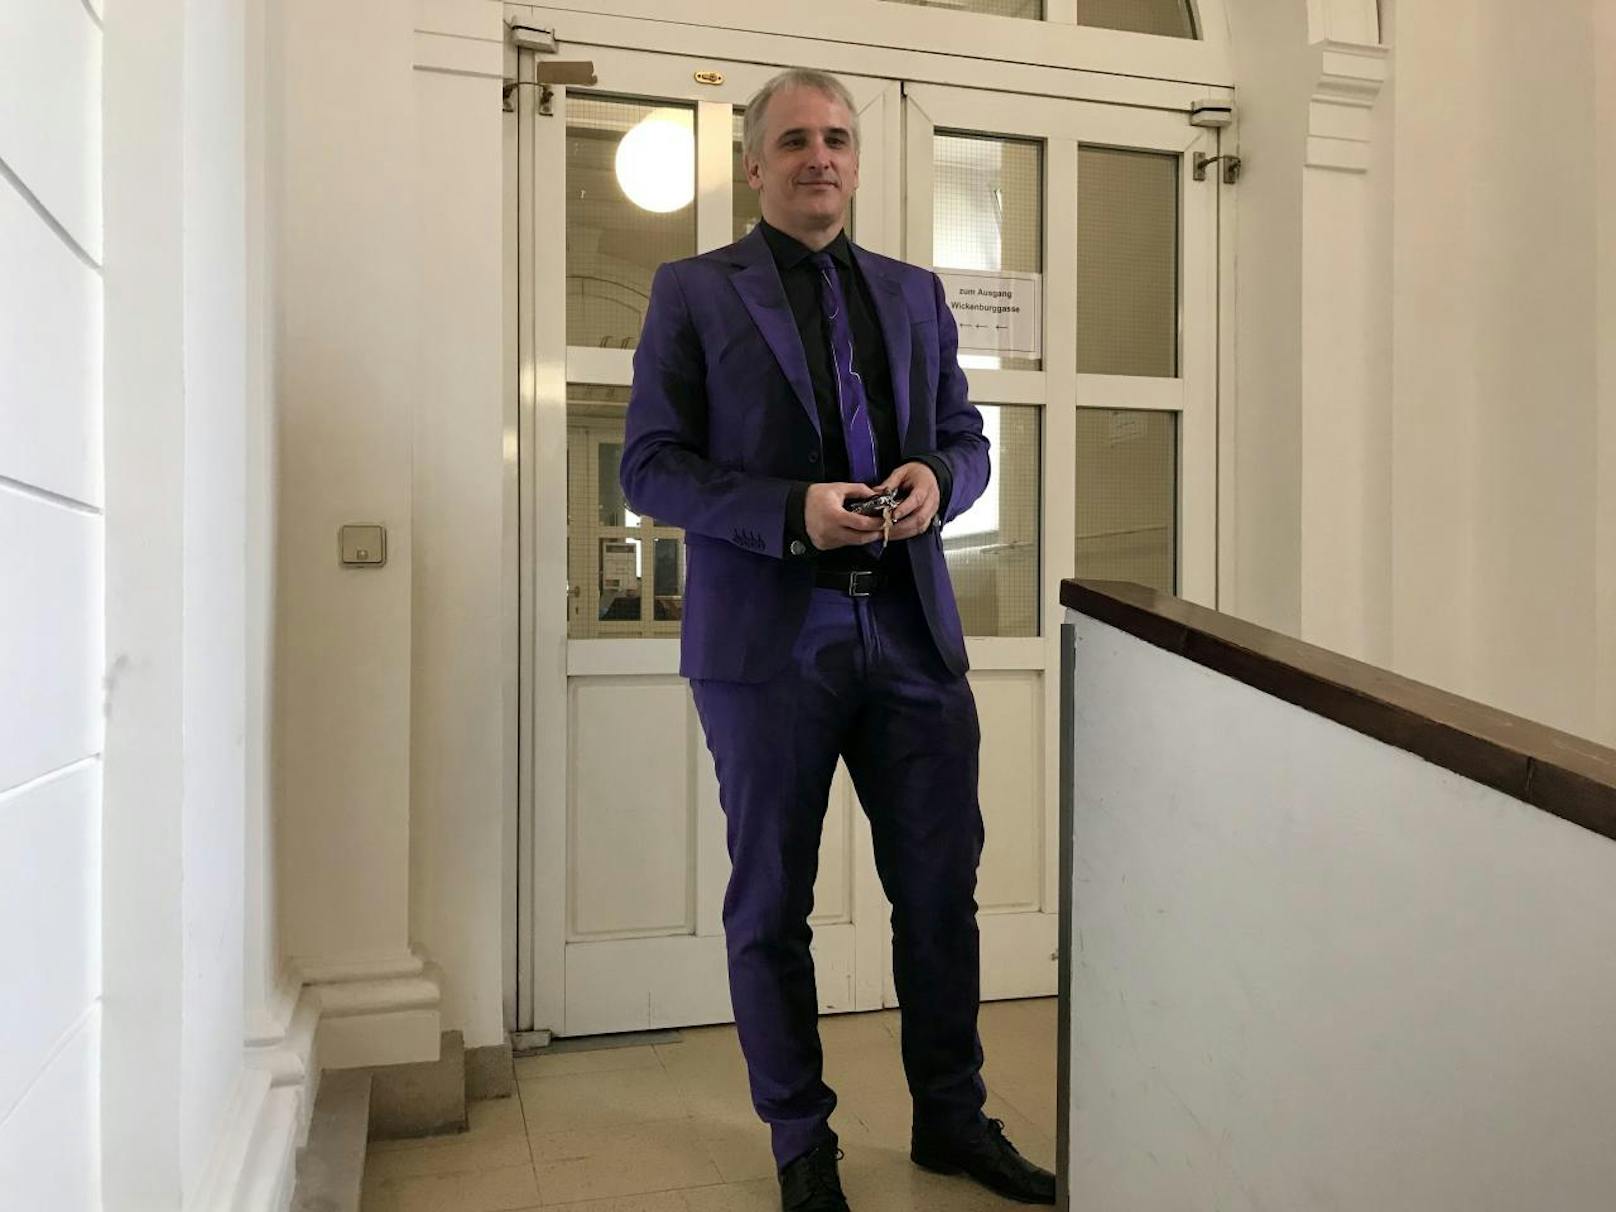 Anwalt Michael Dohr heute in Violett, der Designer heißt wieder "Moschino".